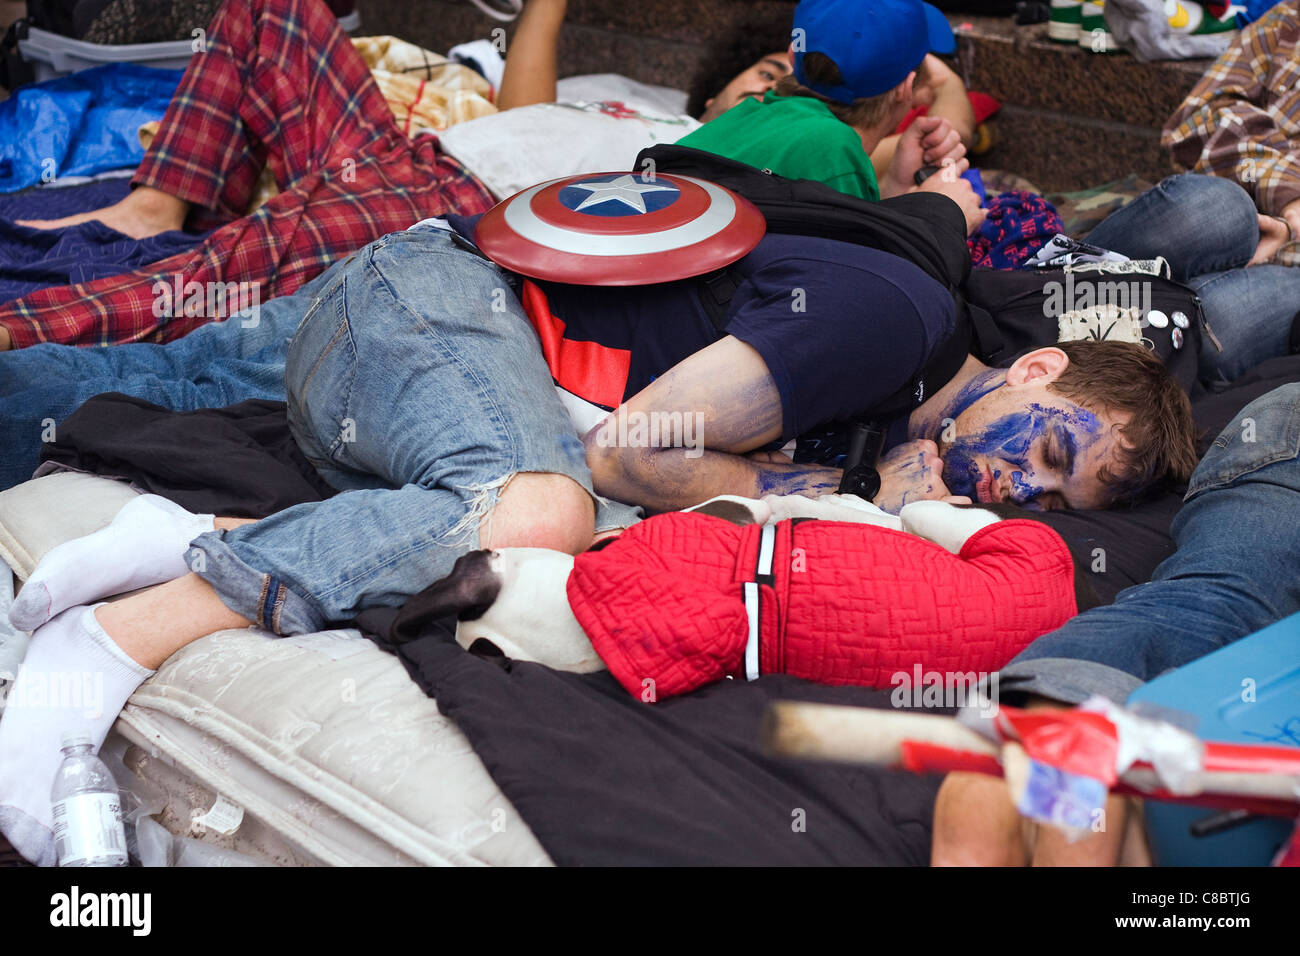 Occupare Wall Street Protester con il cap. America Shield dorme dopo un tempo trascorso la notte la pulizia Zuccotti Park dal 14 ottobre, 2011 Foto Stock